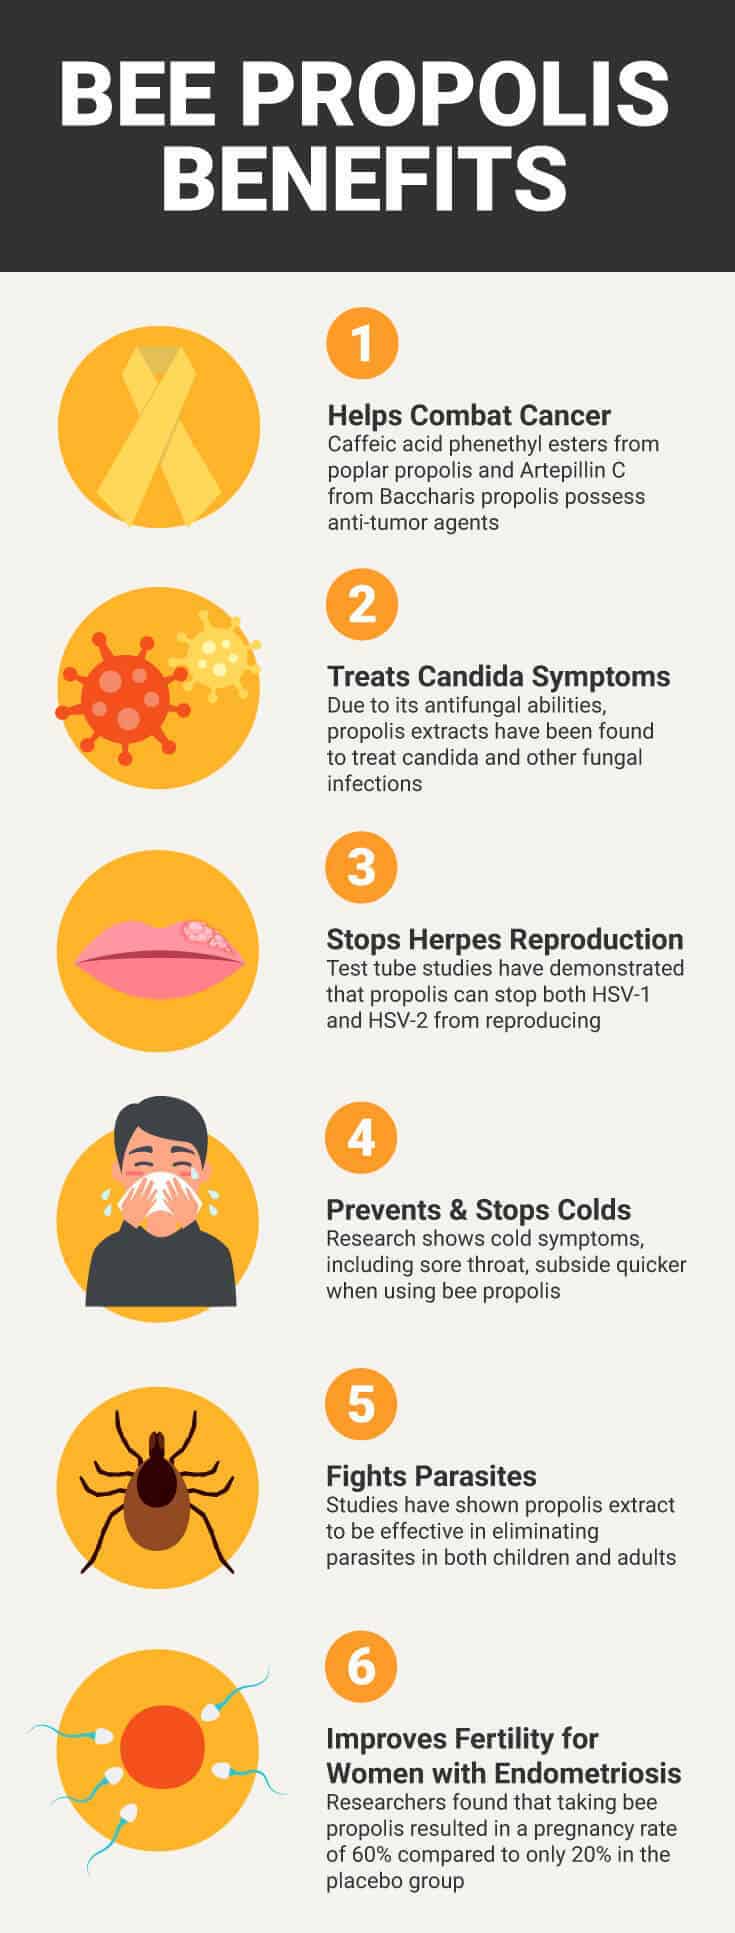 Bee propolis benefits - Dr. Axe